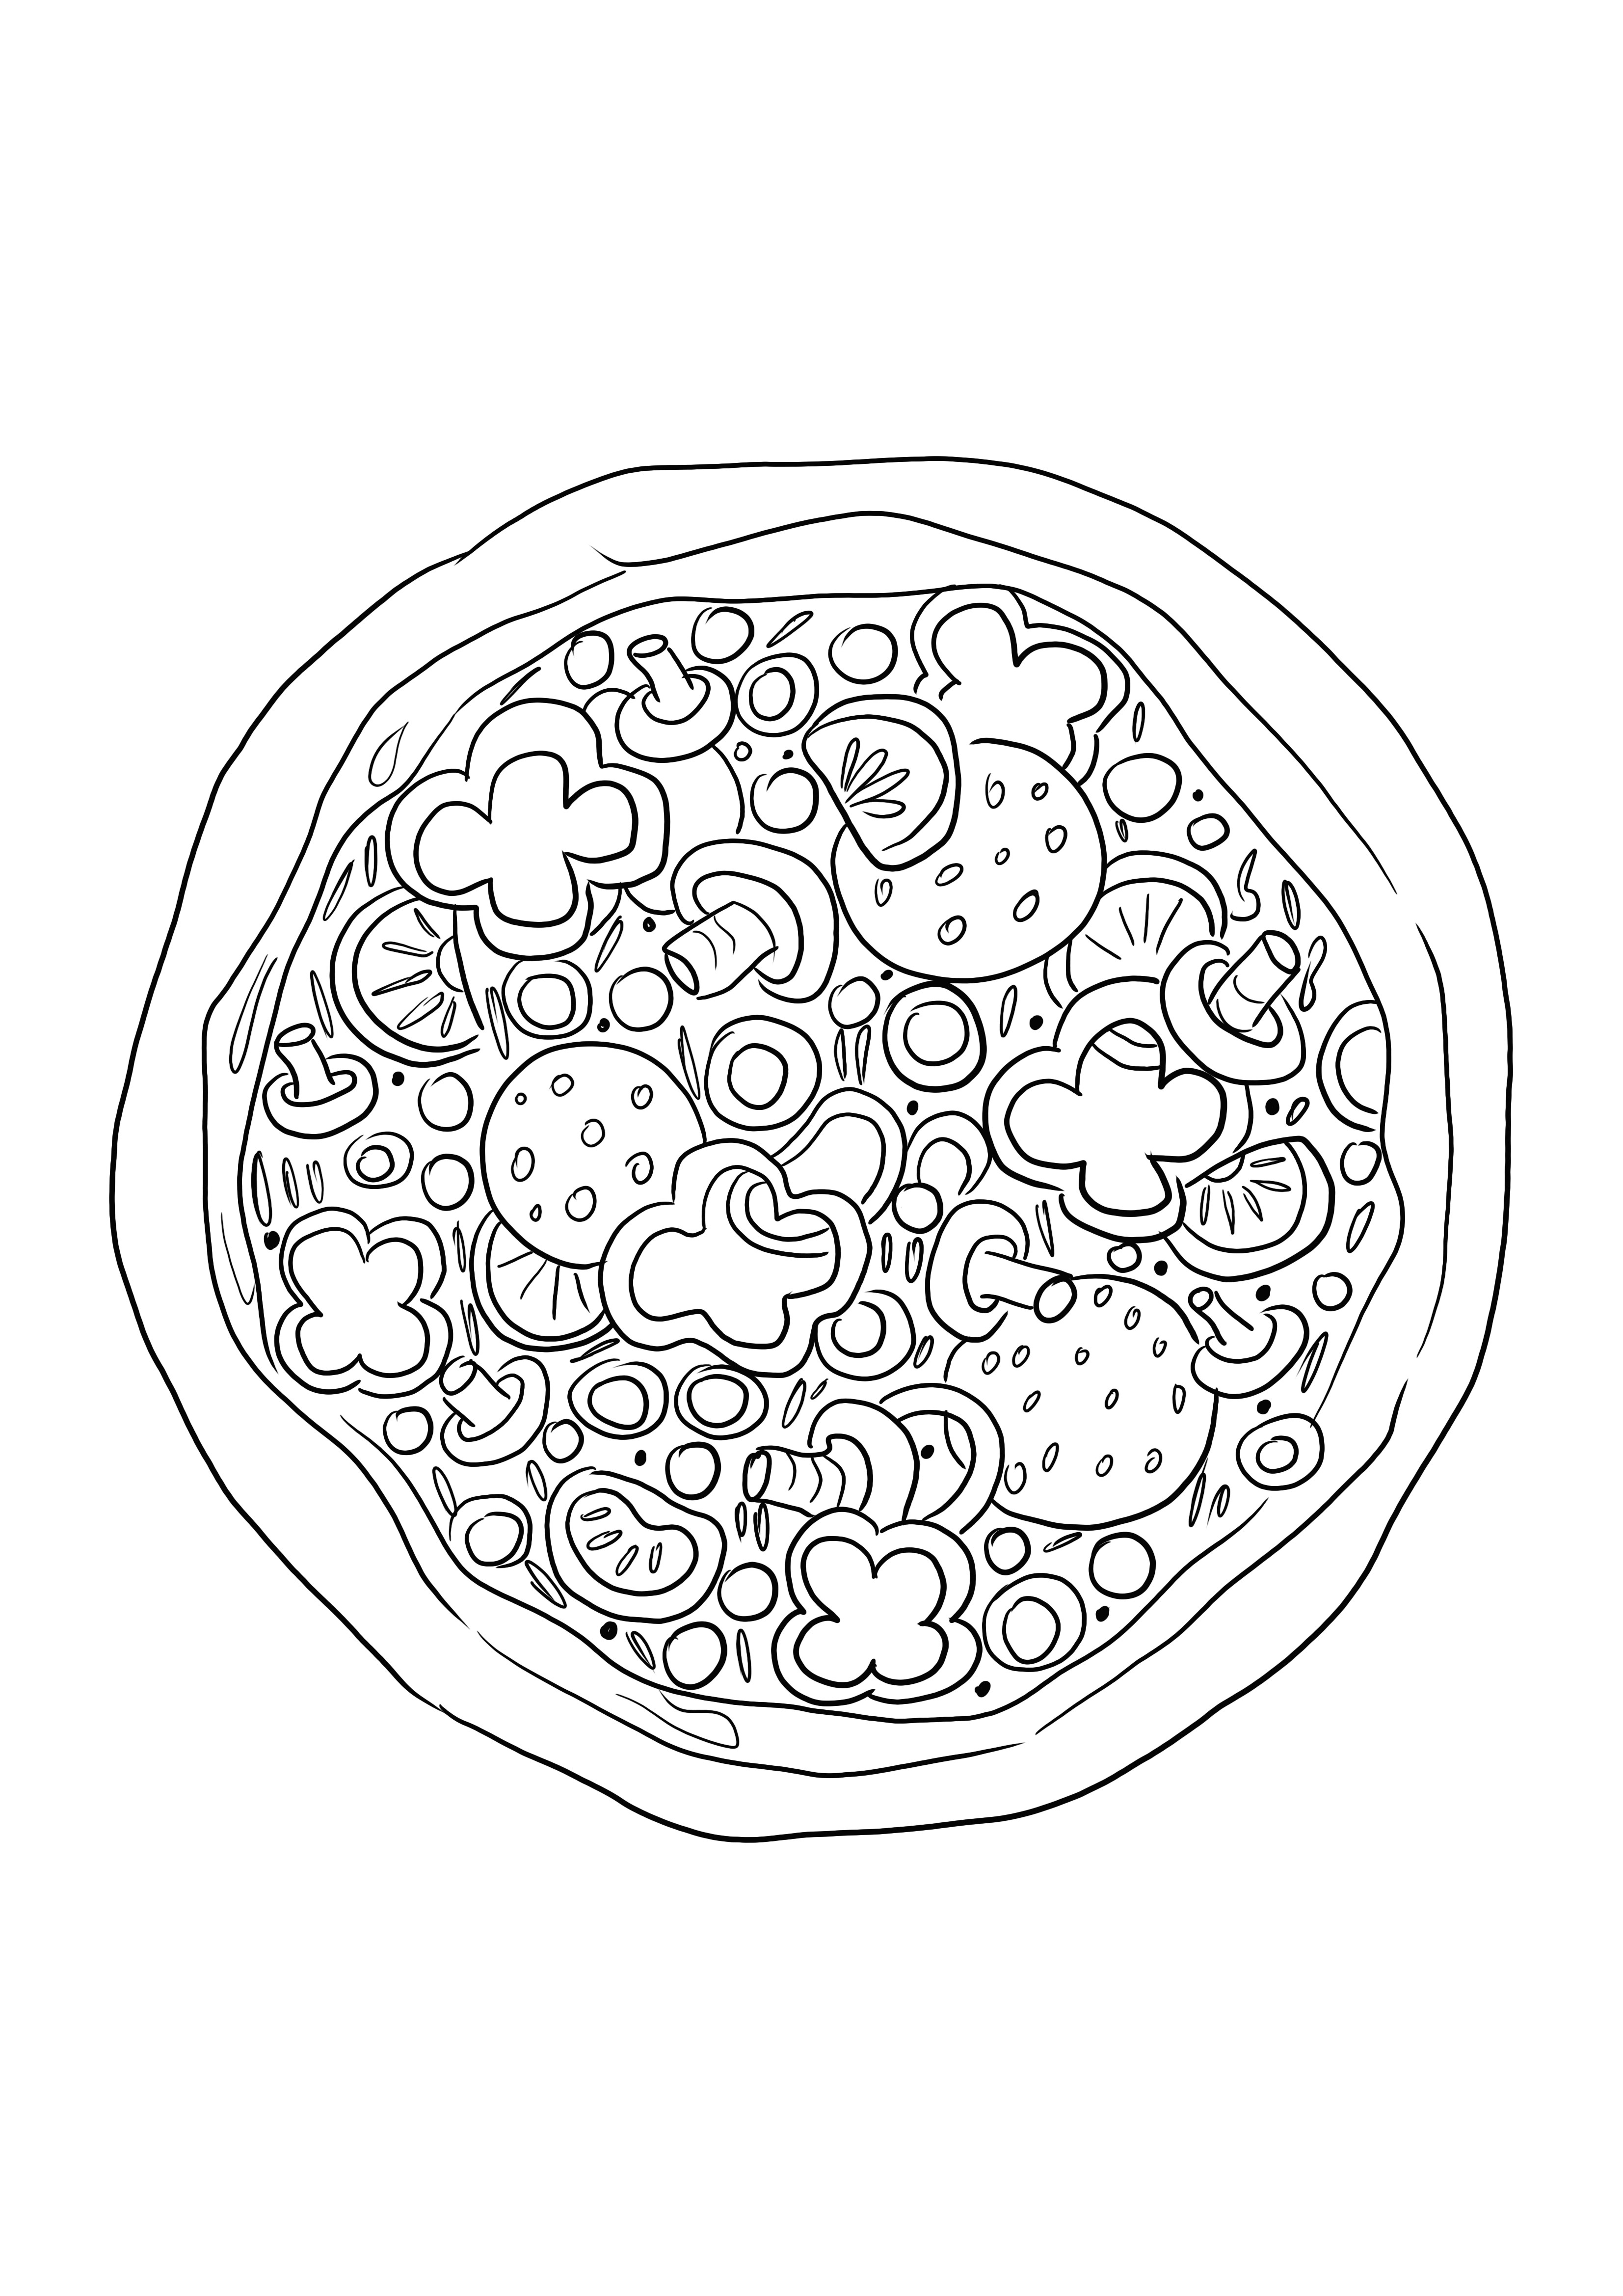 Pizza színező kép gyerekeknek, hogy könnyen színezzenek, és megismerjék az ételeket